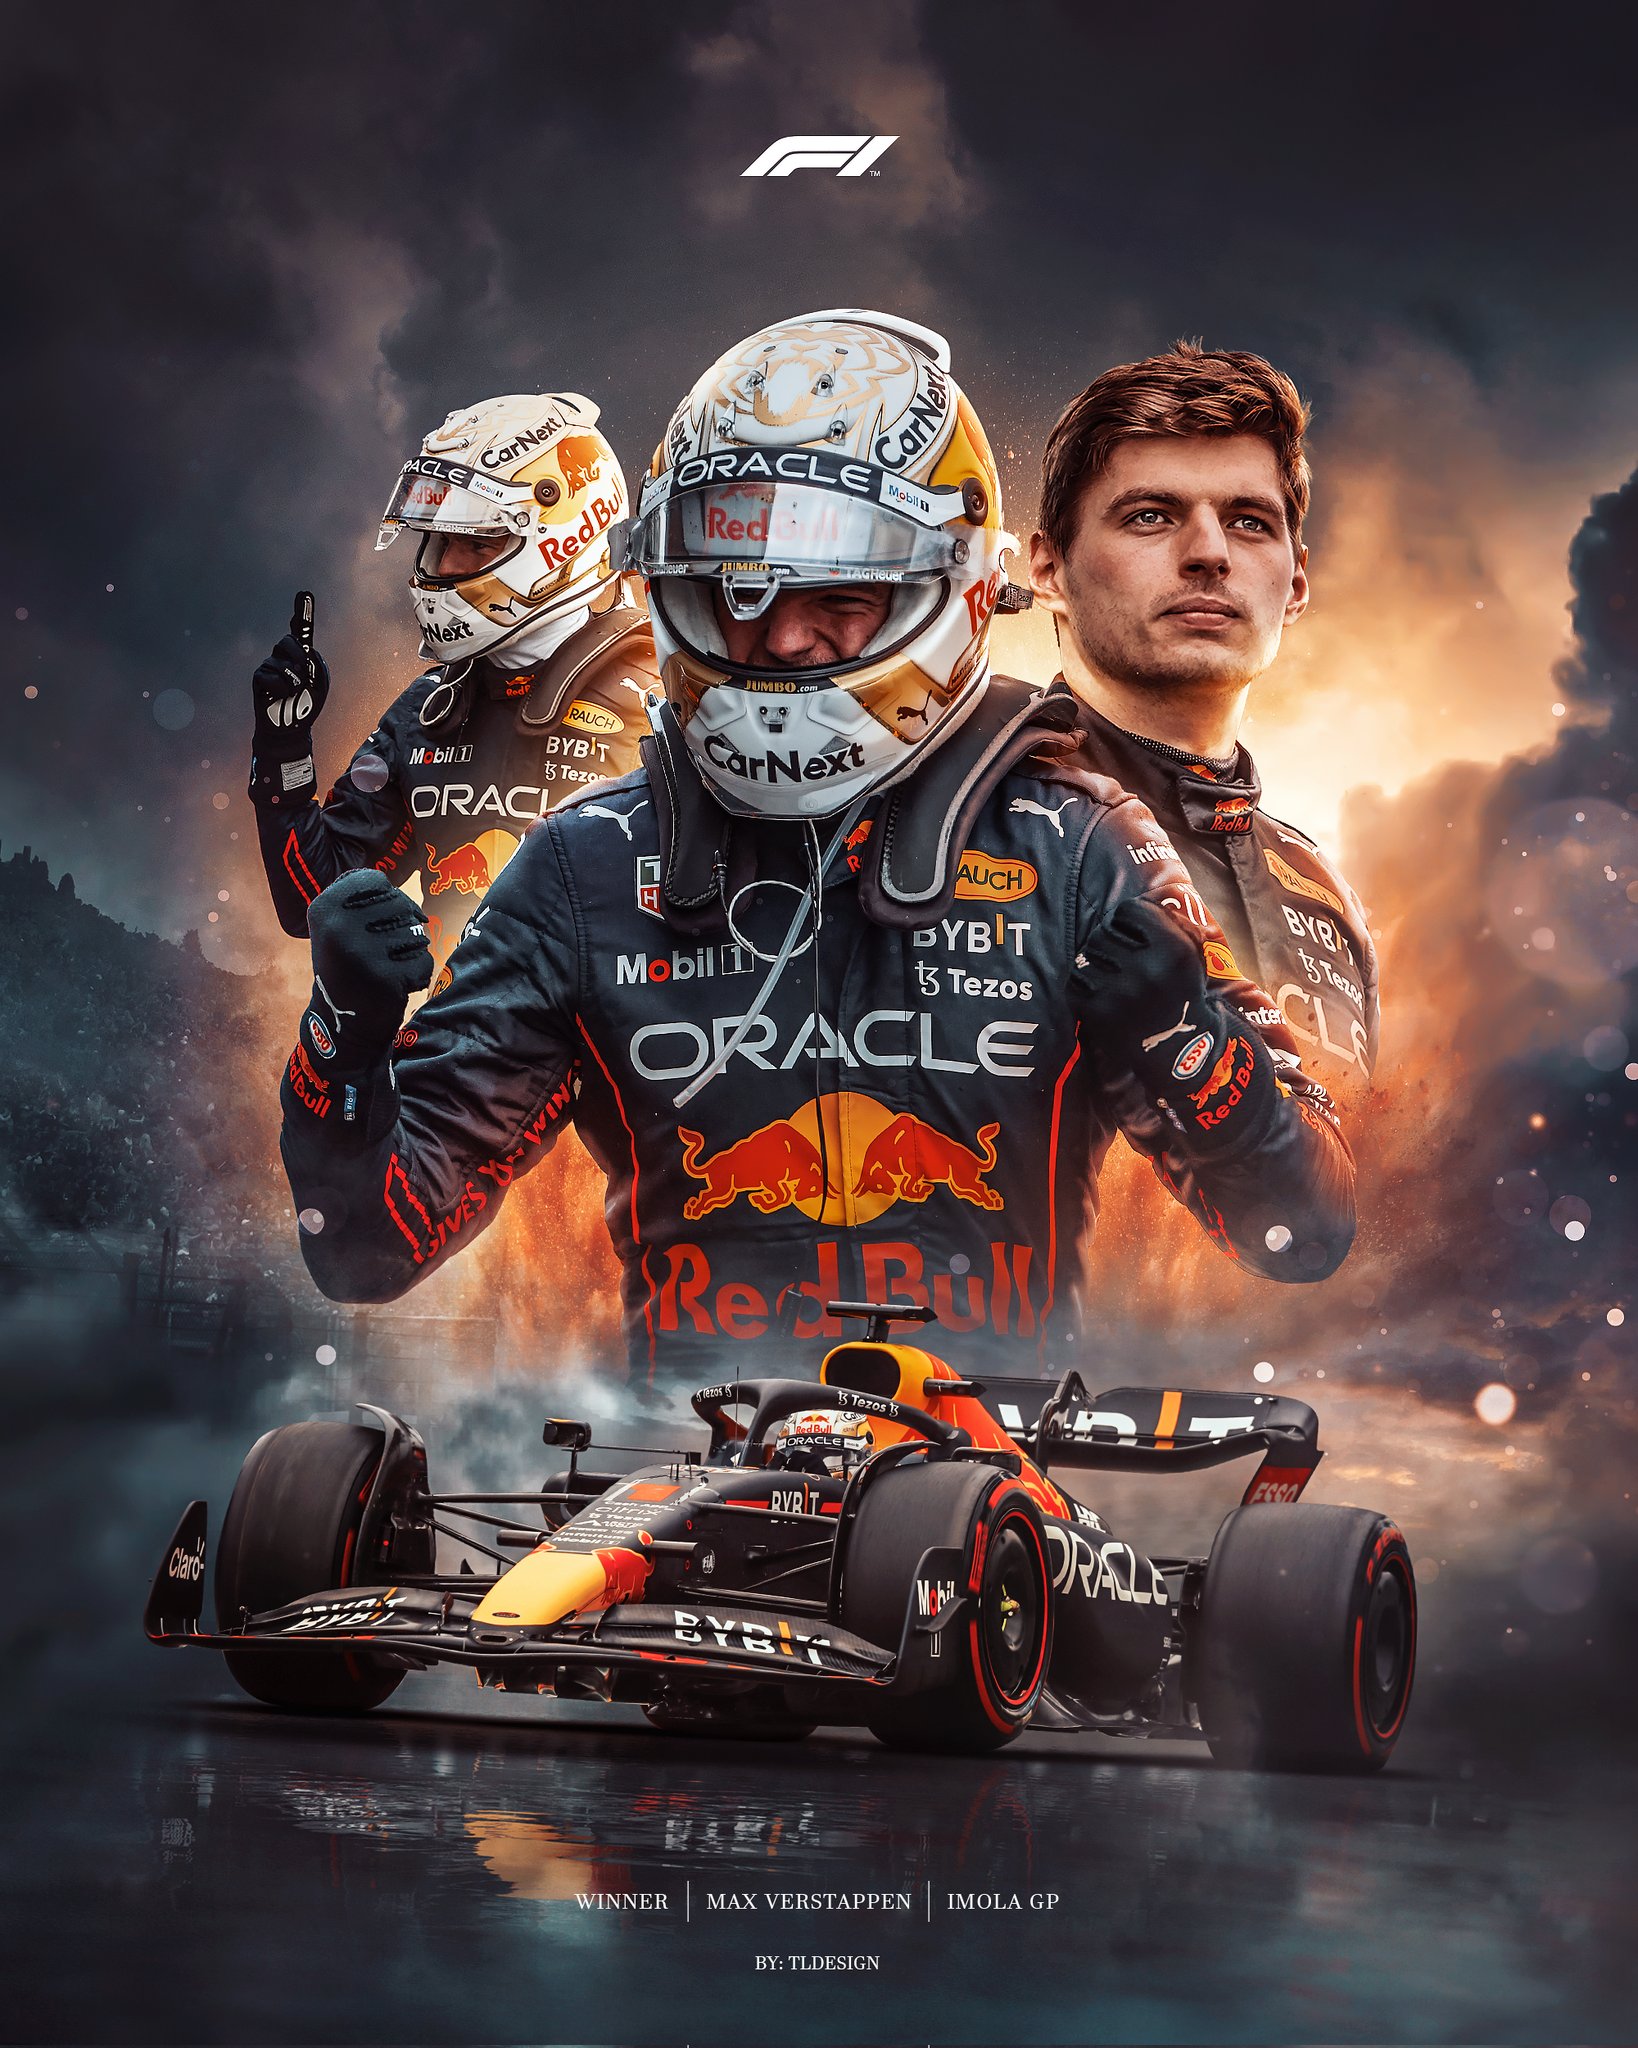 Tl Design Verstappen #ImolaGP winner poster